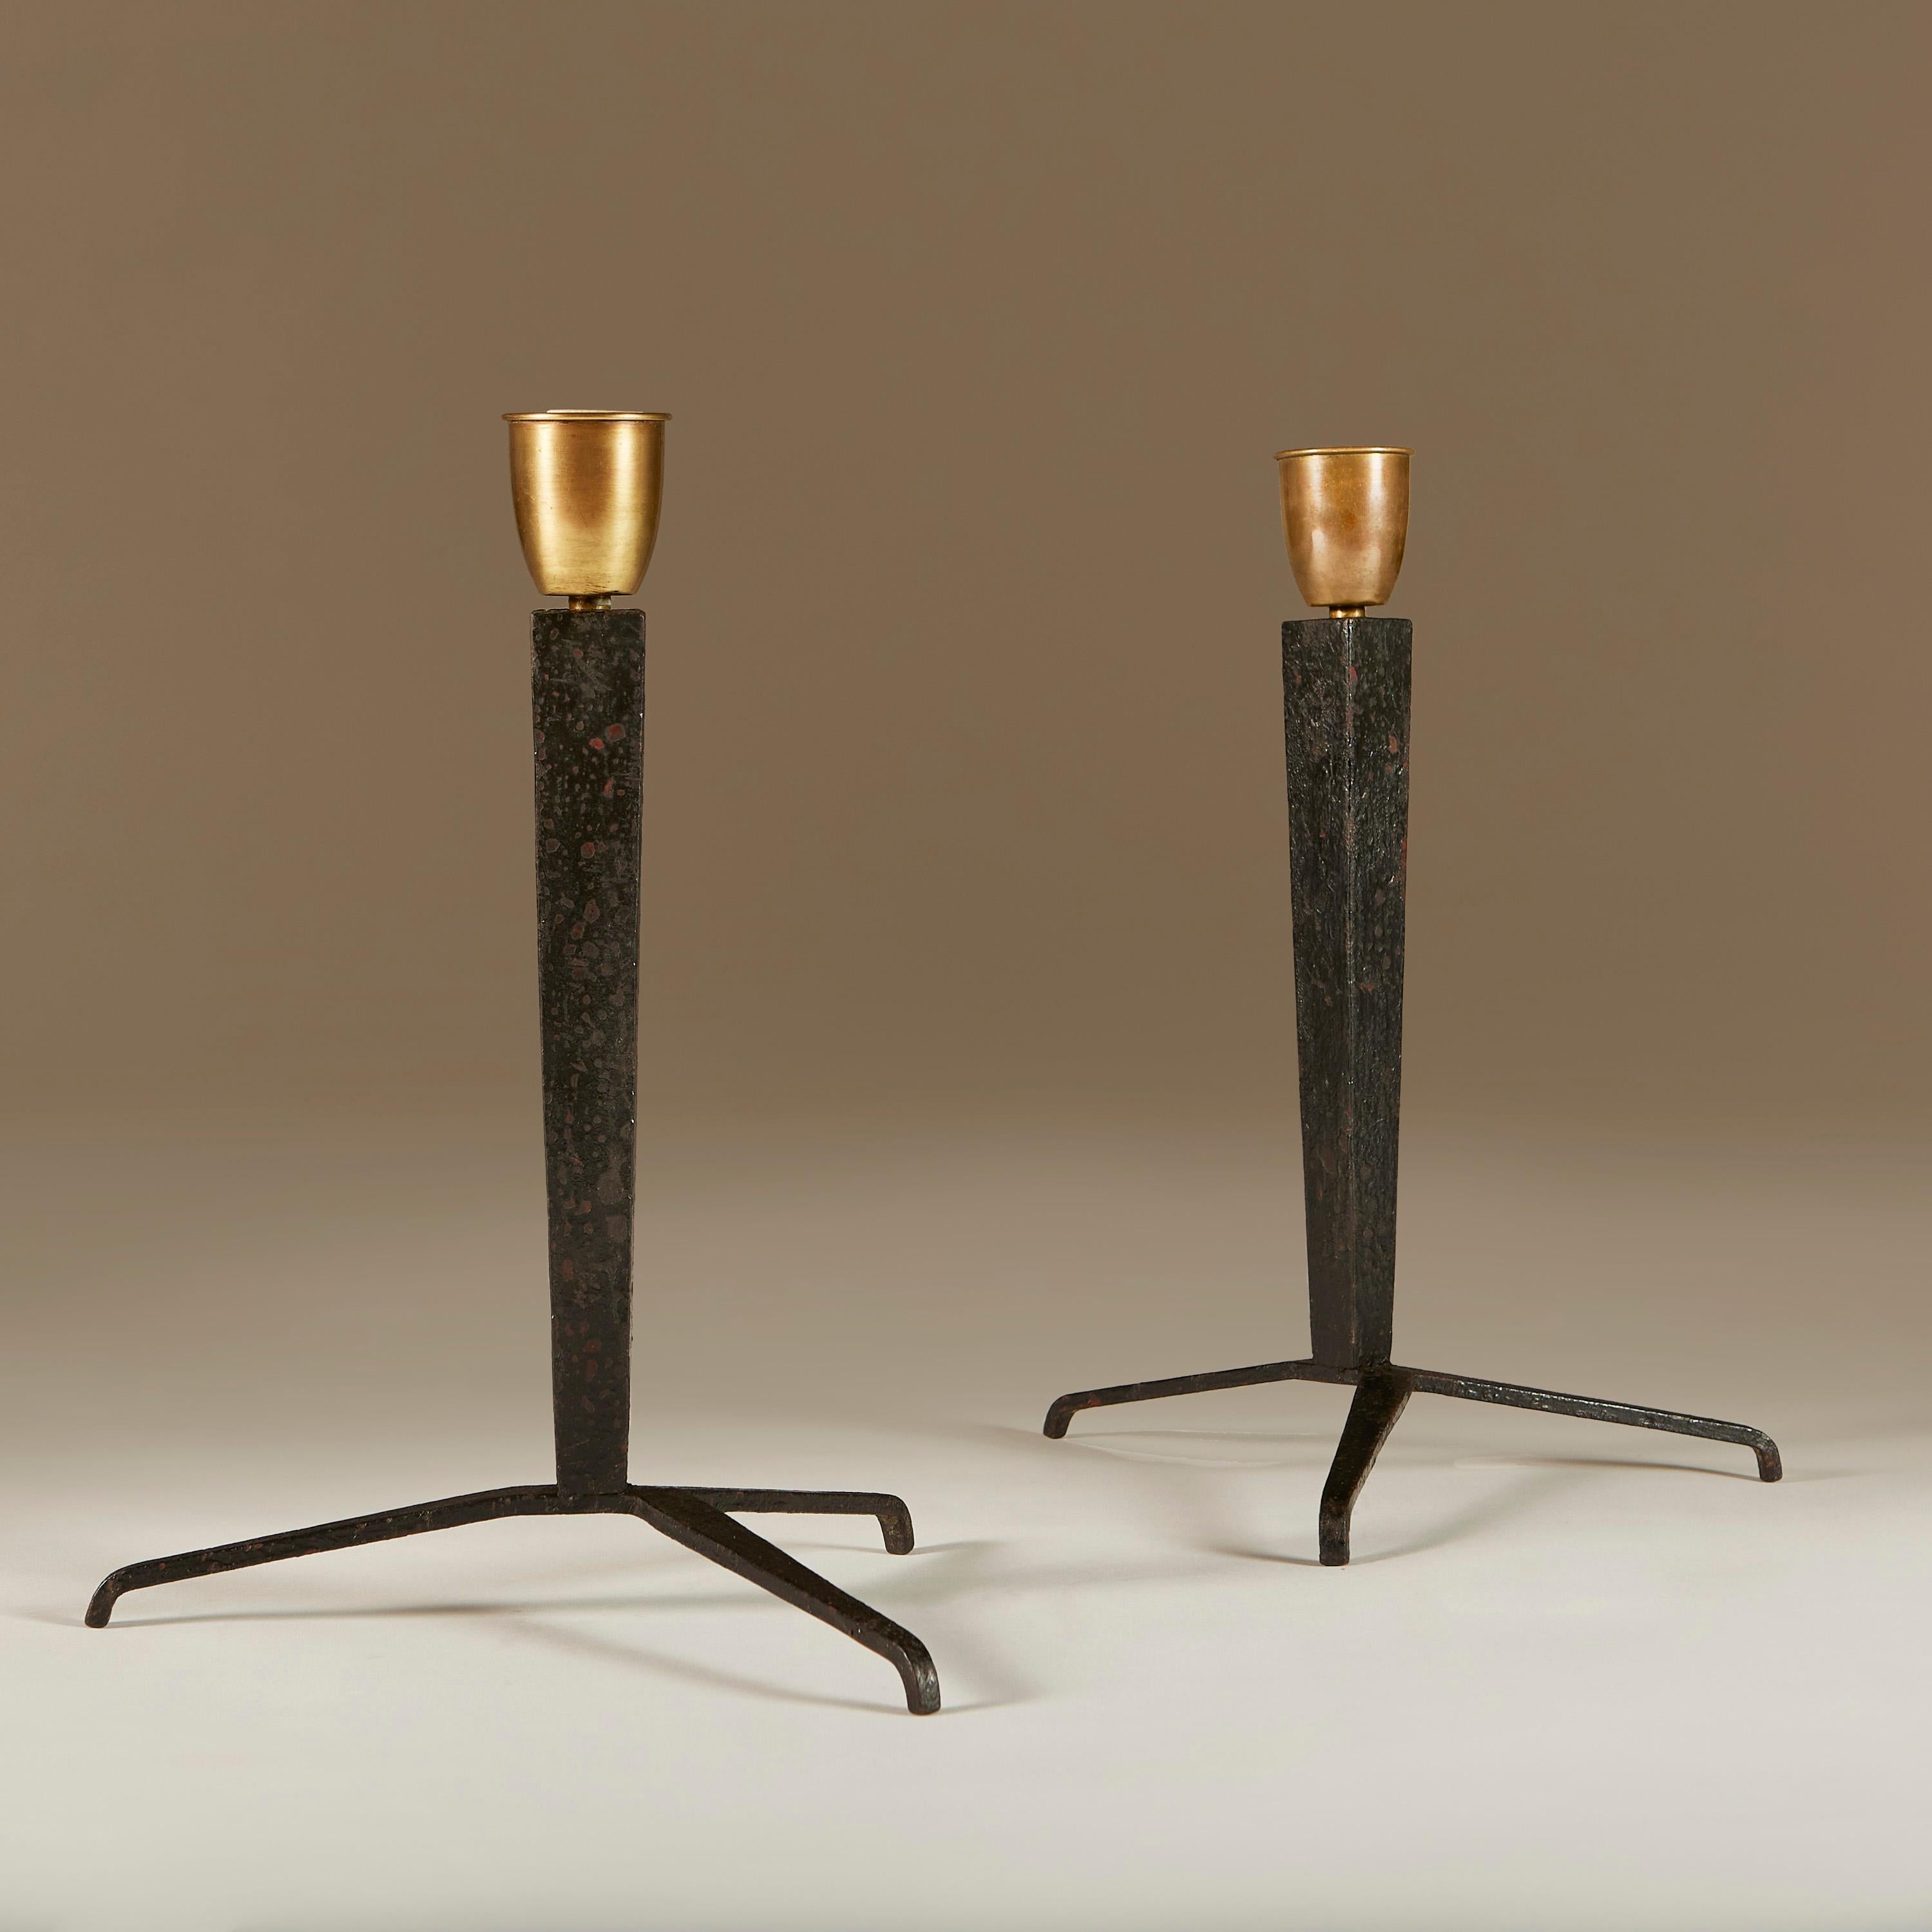 Ces lampes de table exceptionnelles témoignent de la maîtrise de Jean-Michel Franks en matière de lignes minimalistes parfaitement équilibrées, avec leurs pieds effilés, leur texture exquise et leurs détails précis. Exécuté par Comte à Buenos Aires,